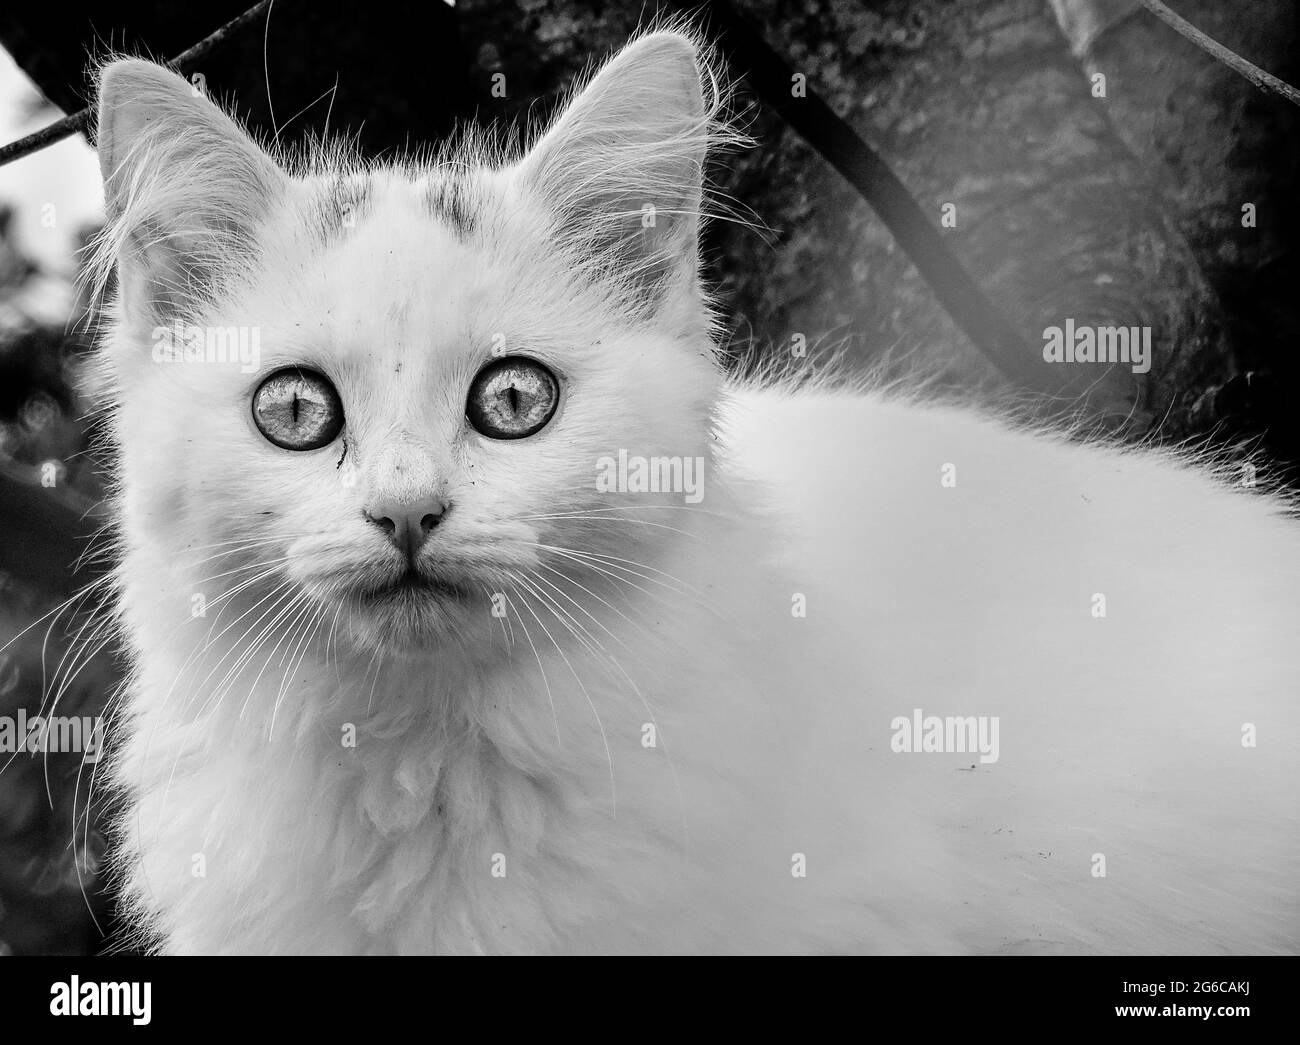 Schwarz-weiße Katze, die in die Kamera schaut, wunderbare Augen. Niedlich und lustig. Stockfoto